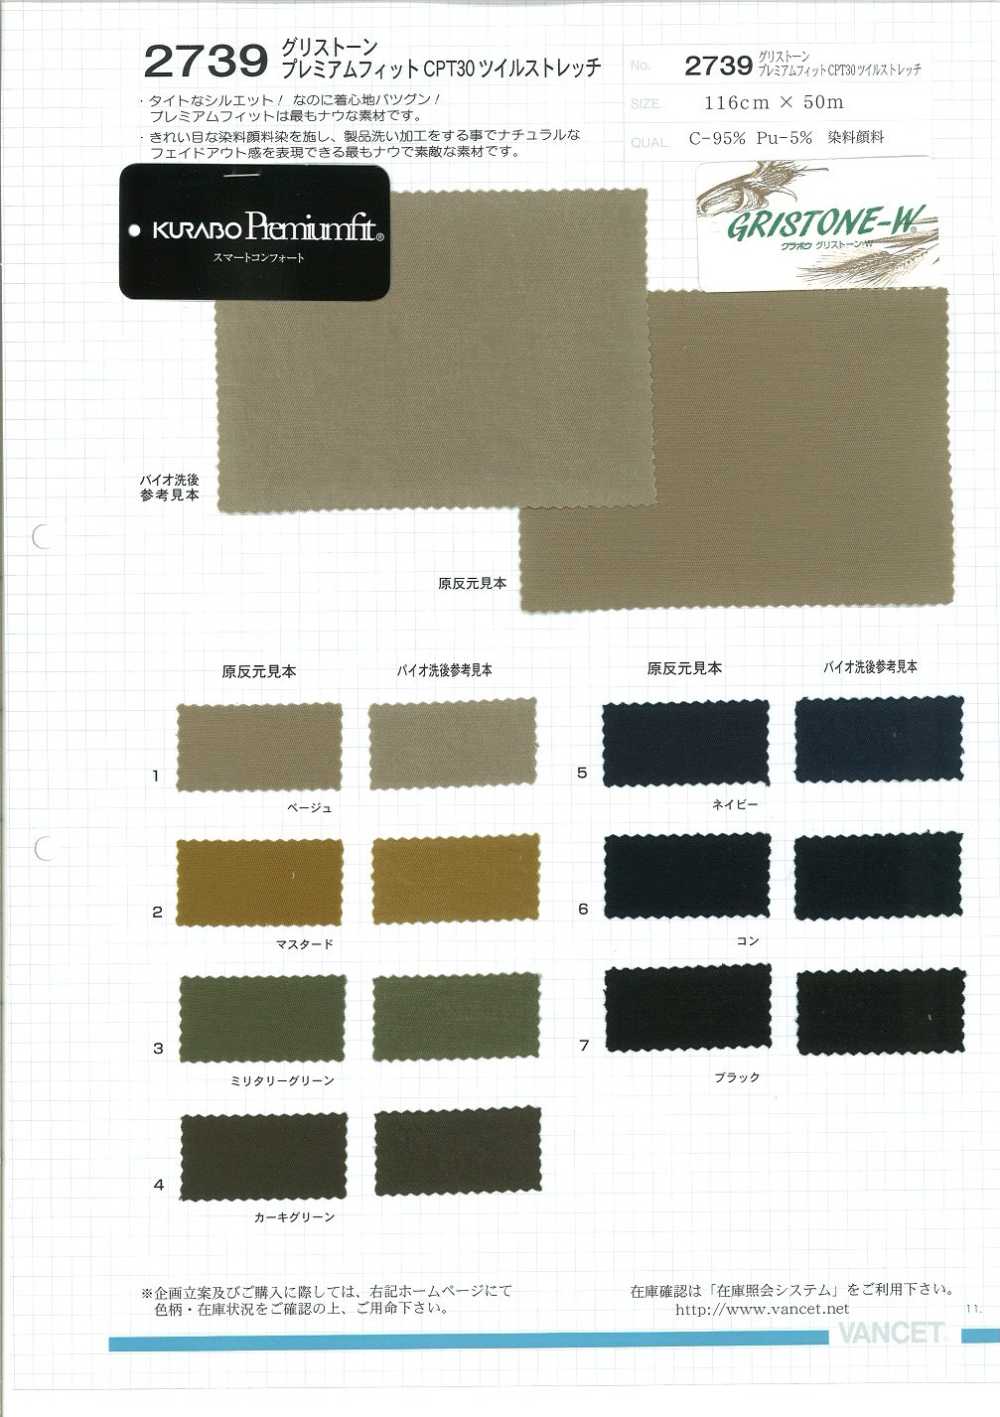 2739 Grisstone Premium Fit CPT30 Twill-Stretch[Textilgewebe] VANCET